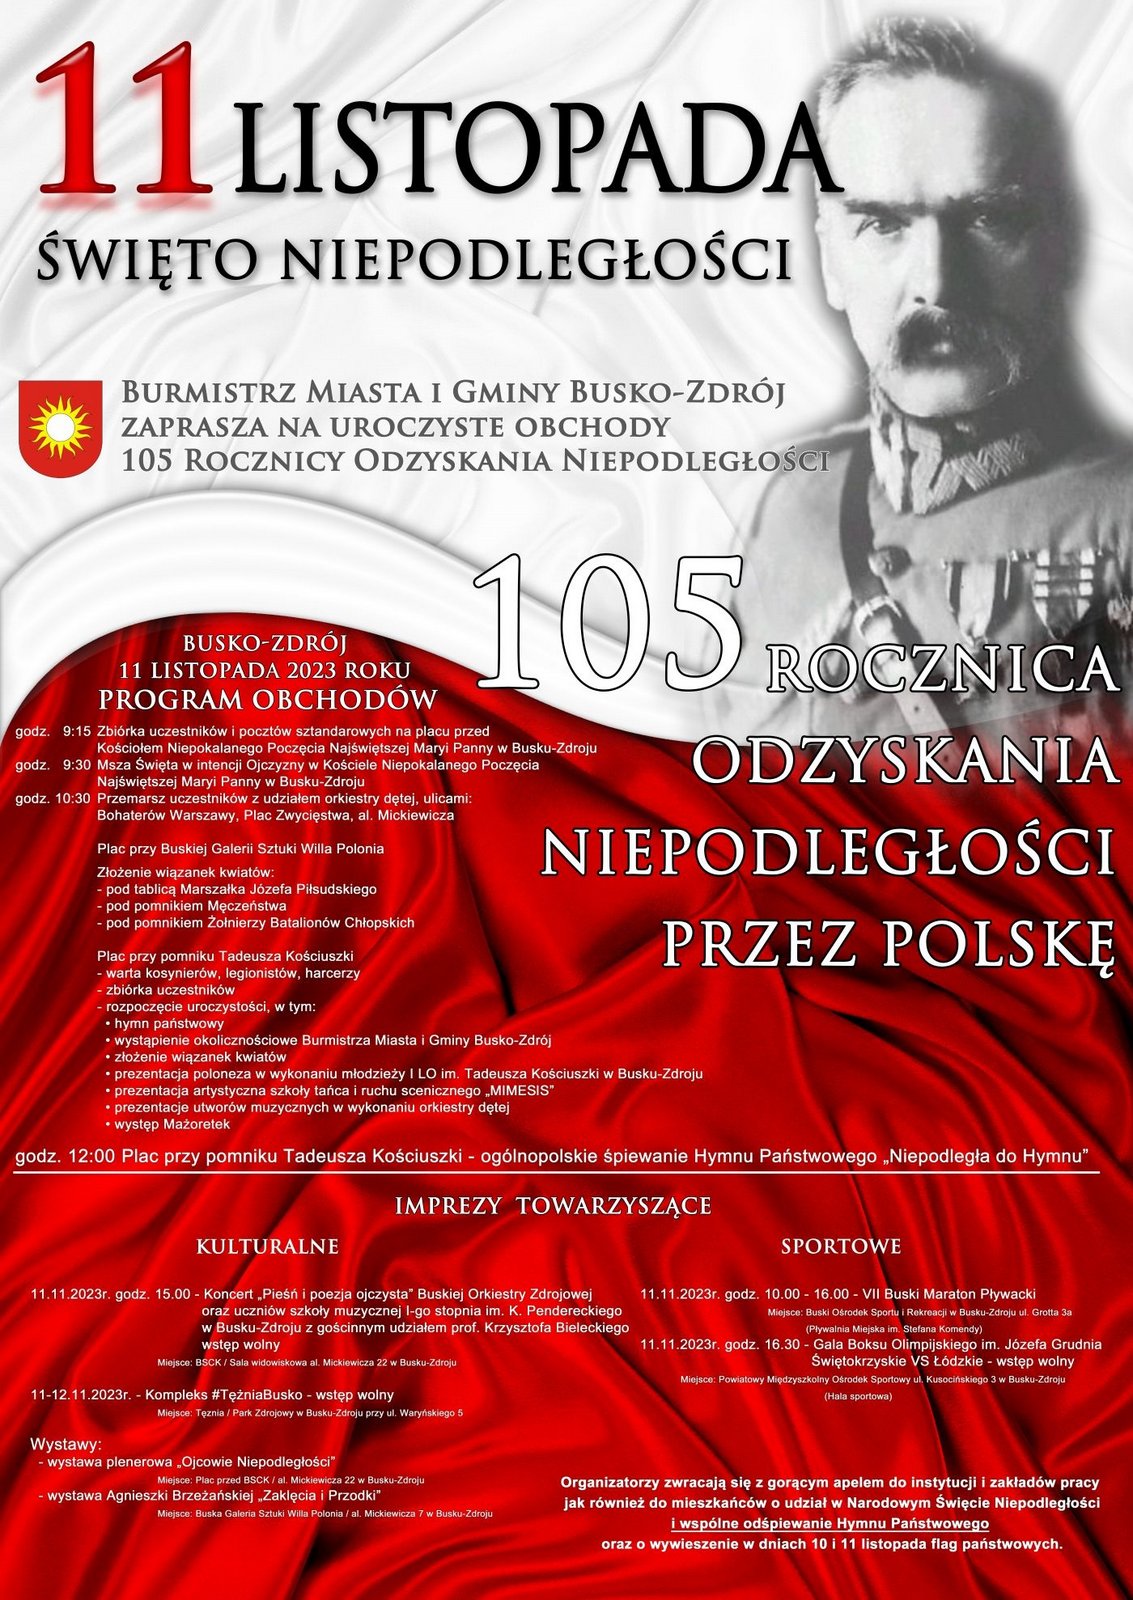 grafika promująca obchody święta niepodległości w Busku-Zdroju, w tle postać Józefa Piłsudskiego oraz polska flaga